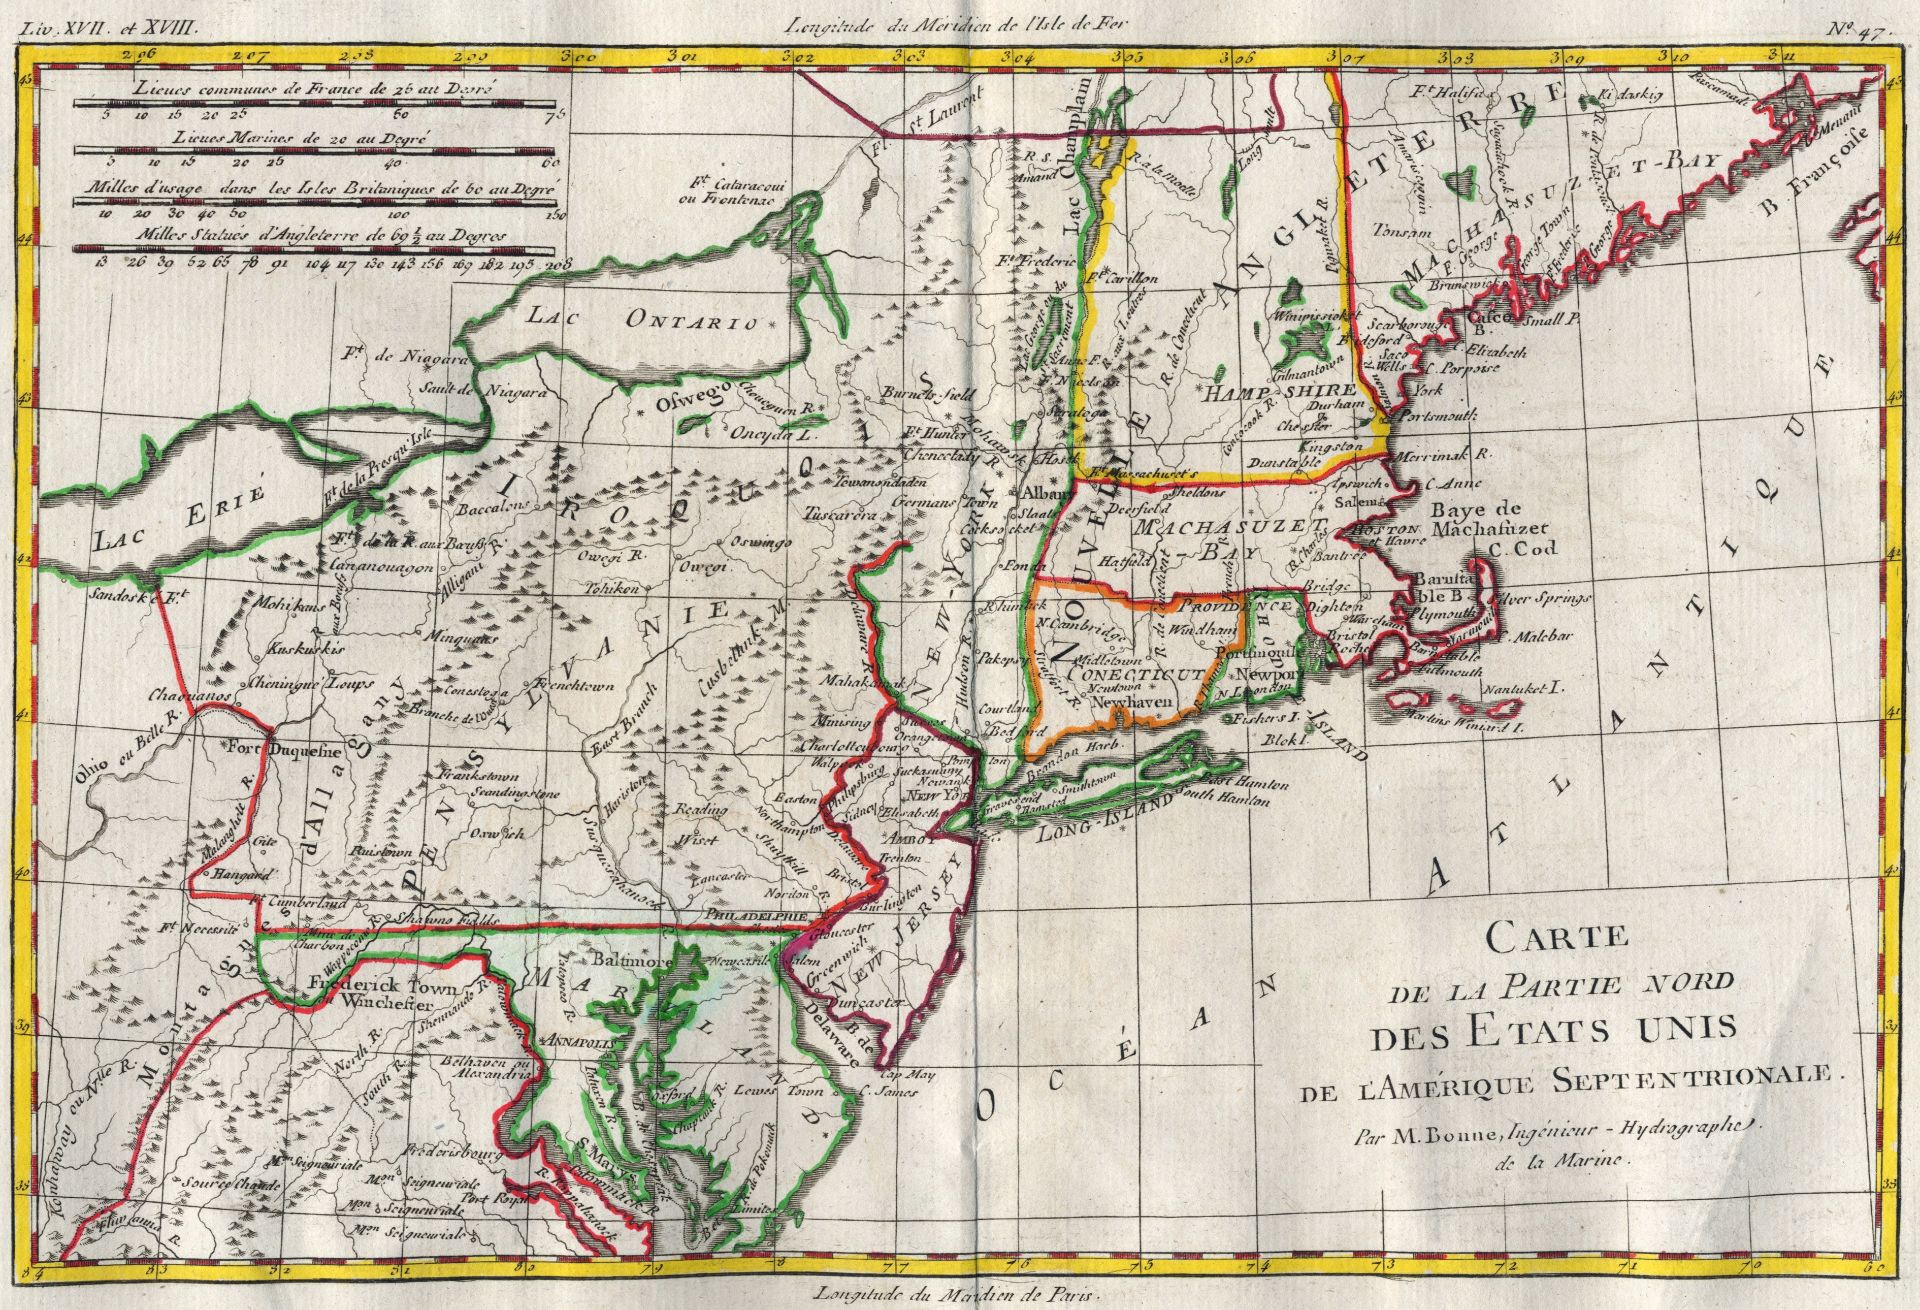 BONNE (RIGOBERT) Atlas de toutes les parties connues du globe terrestre, John Cary, 1793 (2)